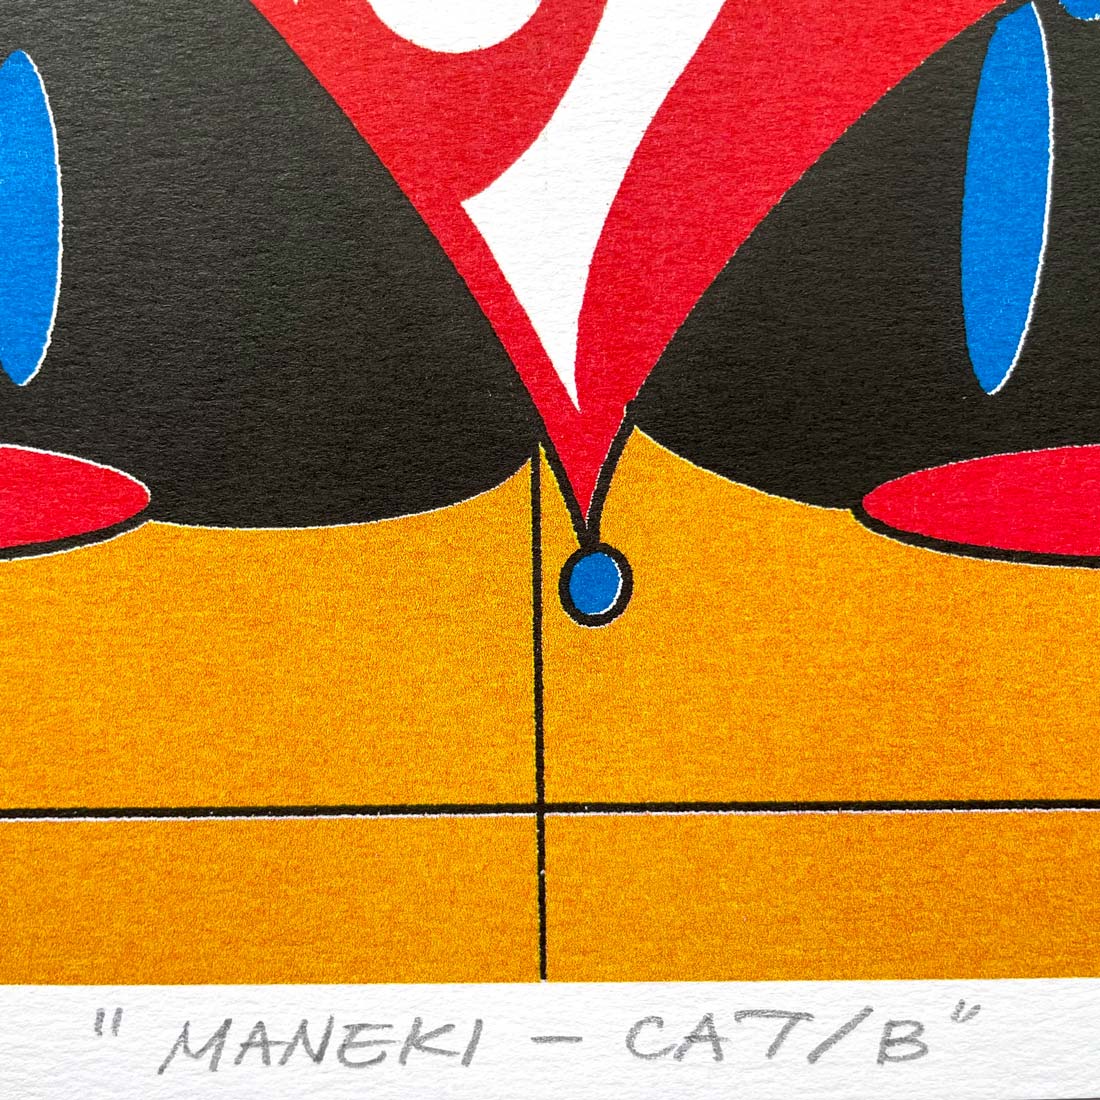 リソグラフ作品「MANEKI-CAT/B」